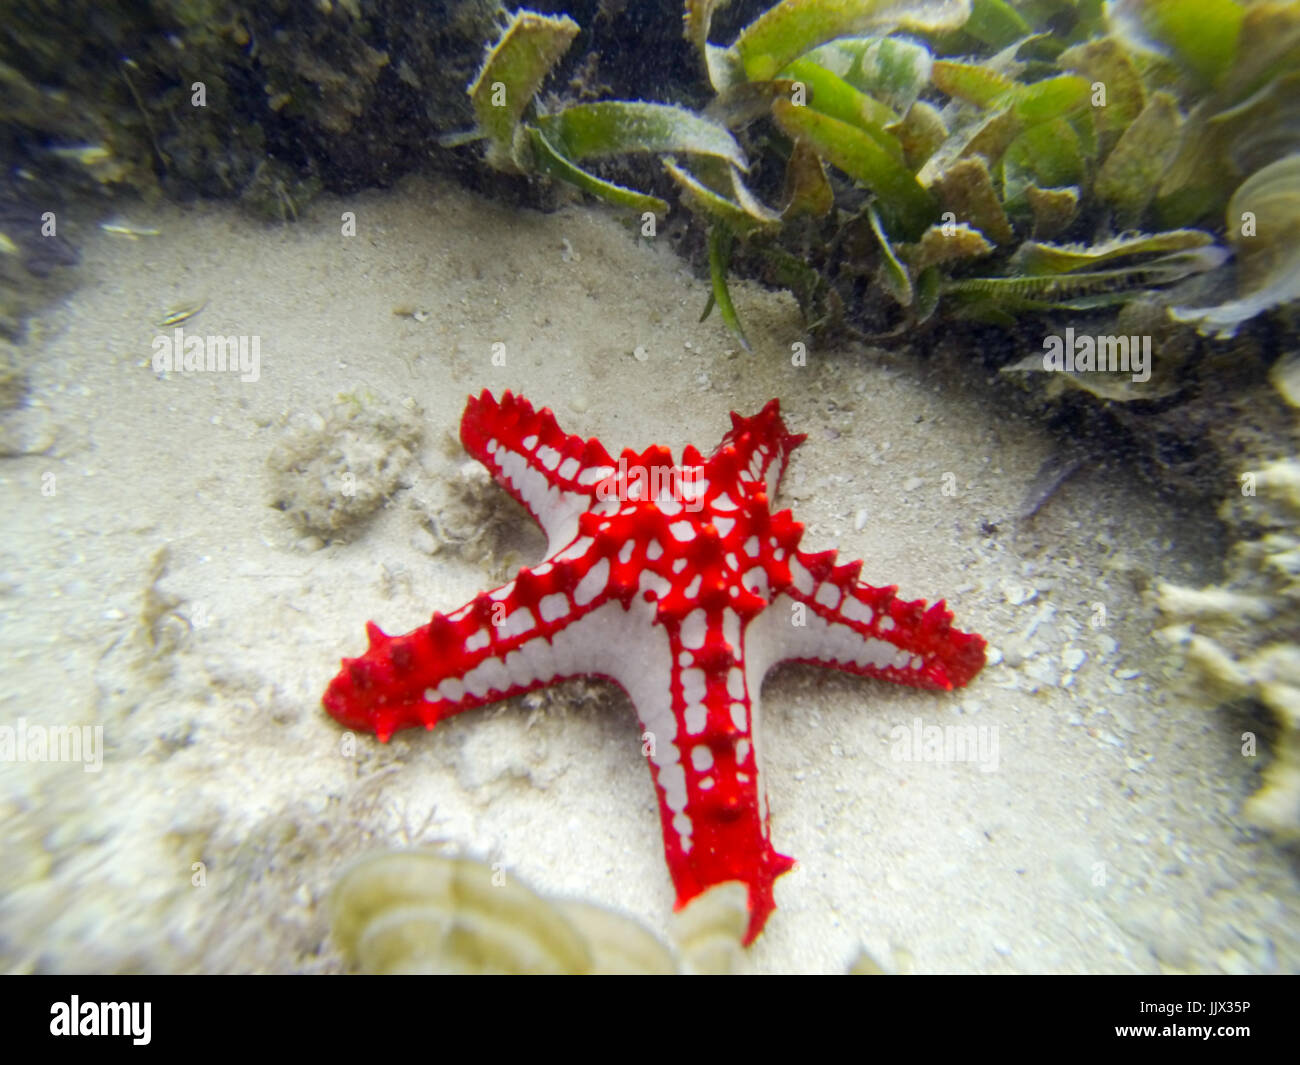 Red-knobbed Sea Star (Protoreaster lincki). Watamu, Kenya. Stock Photo